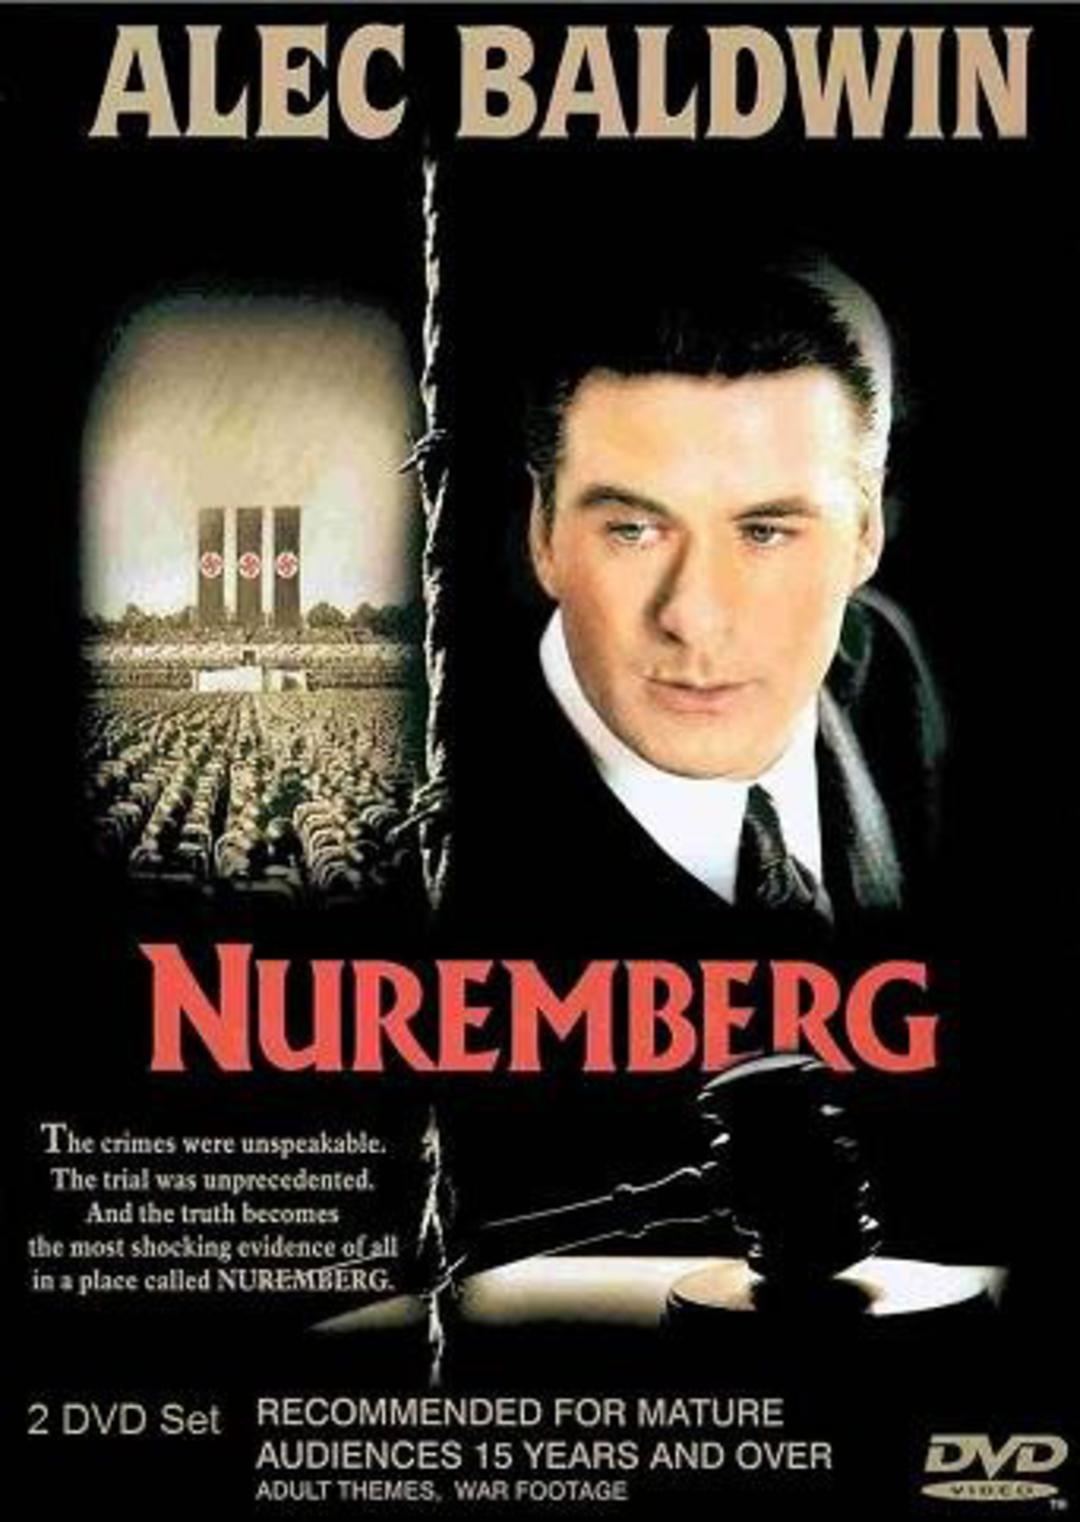 Rare Movies - NUREMBERG.